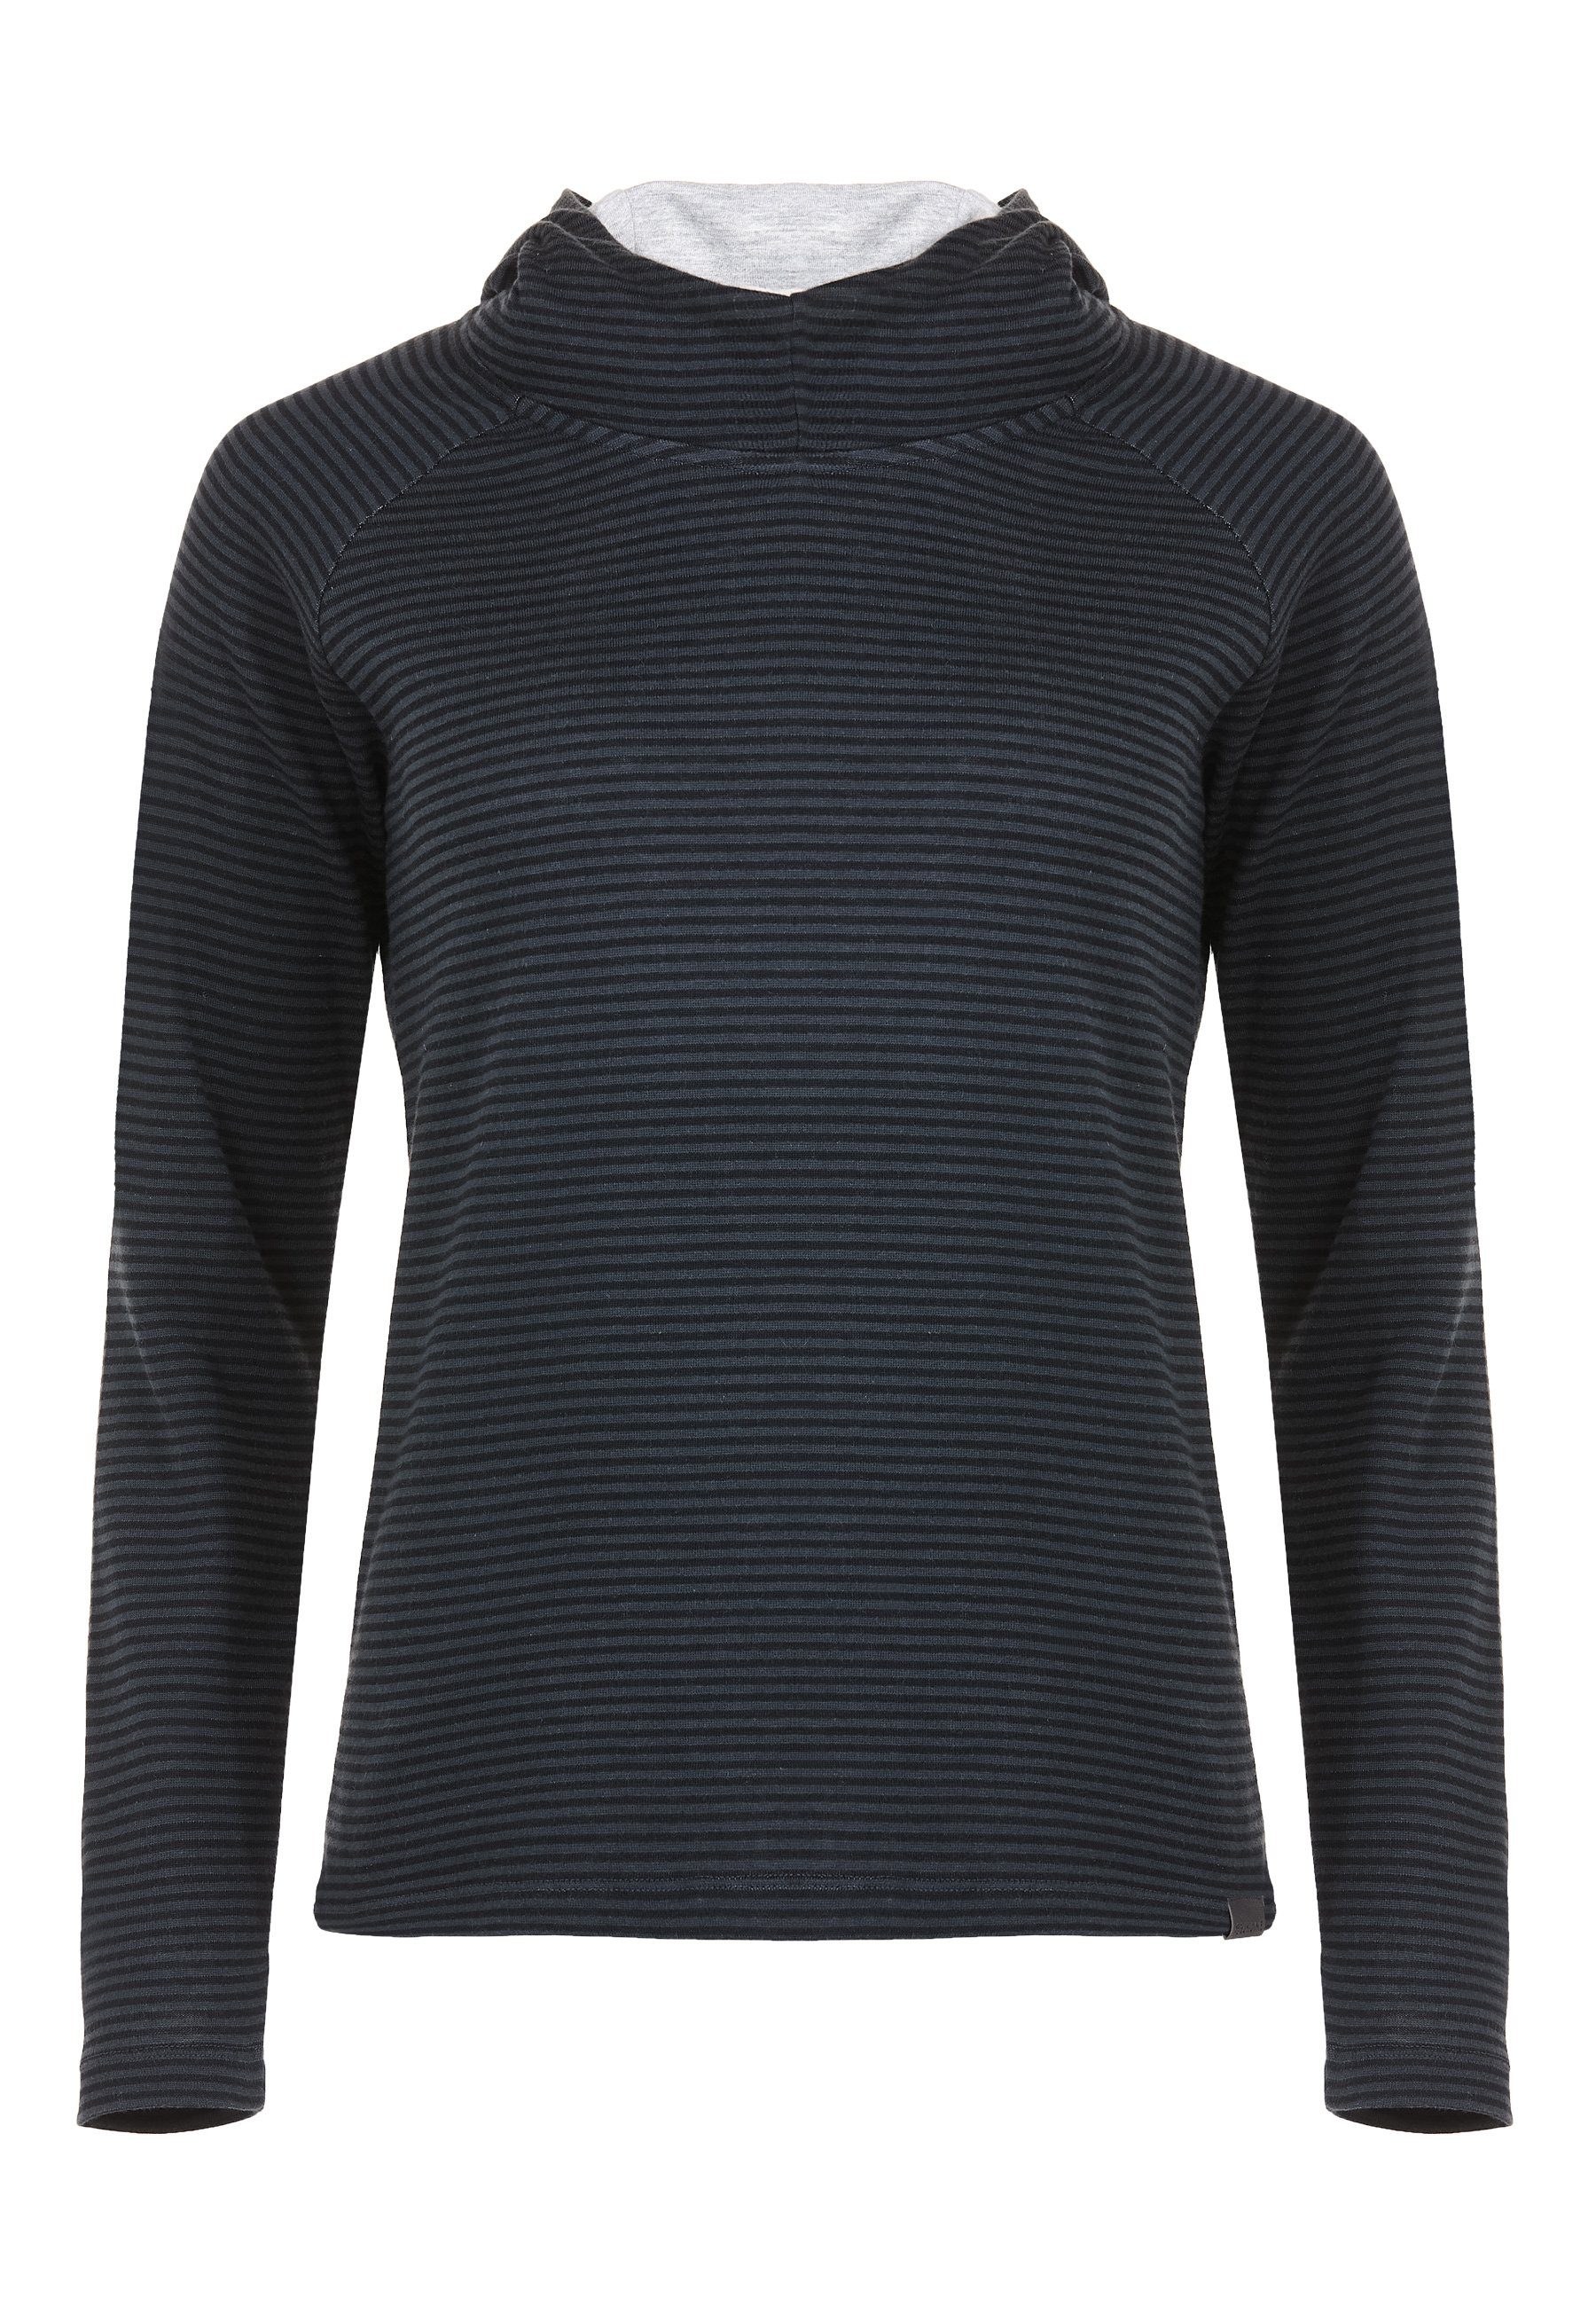 Elkline Hoodie Sweater Wetter Streifen Kapuzenpullover leicht tailliert anthra - black